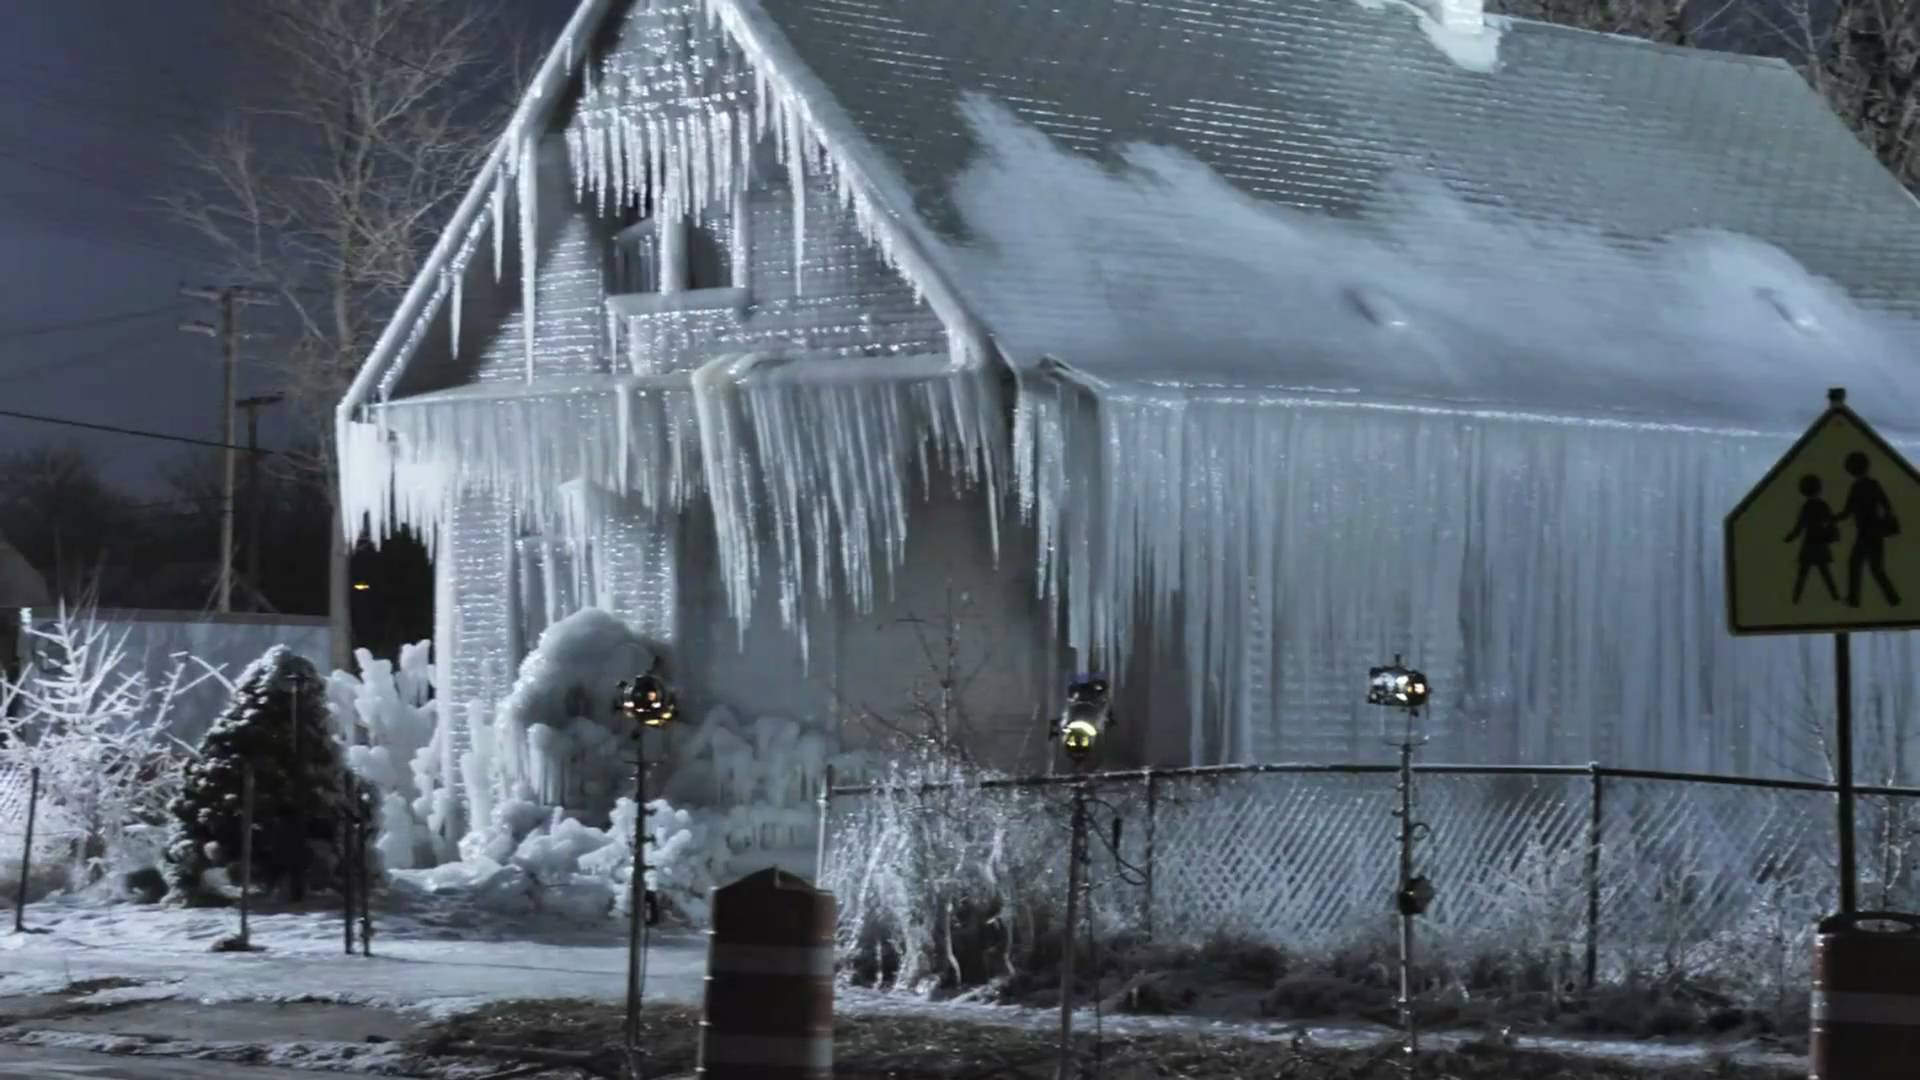 9 bangunan yang terbuat dari es dan salju